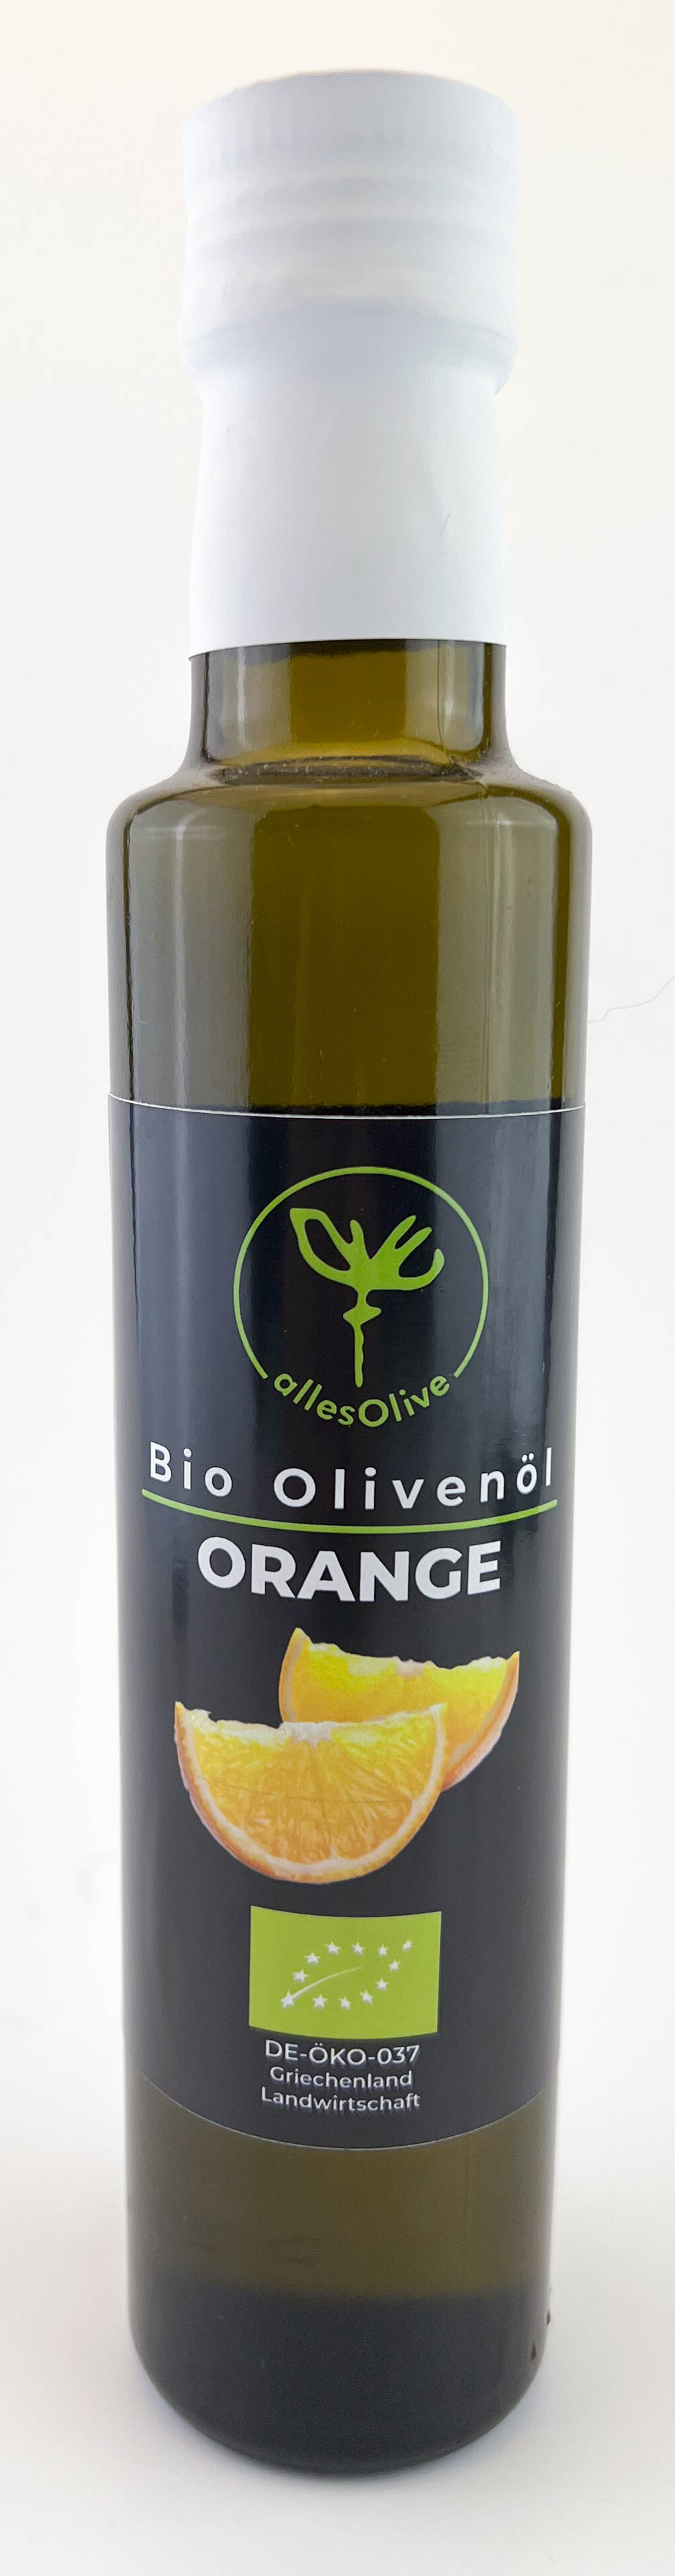 Natives Bio-Olivenöl extra mit Orange, 250ml